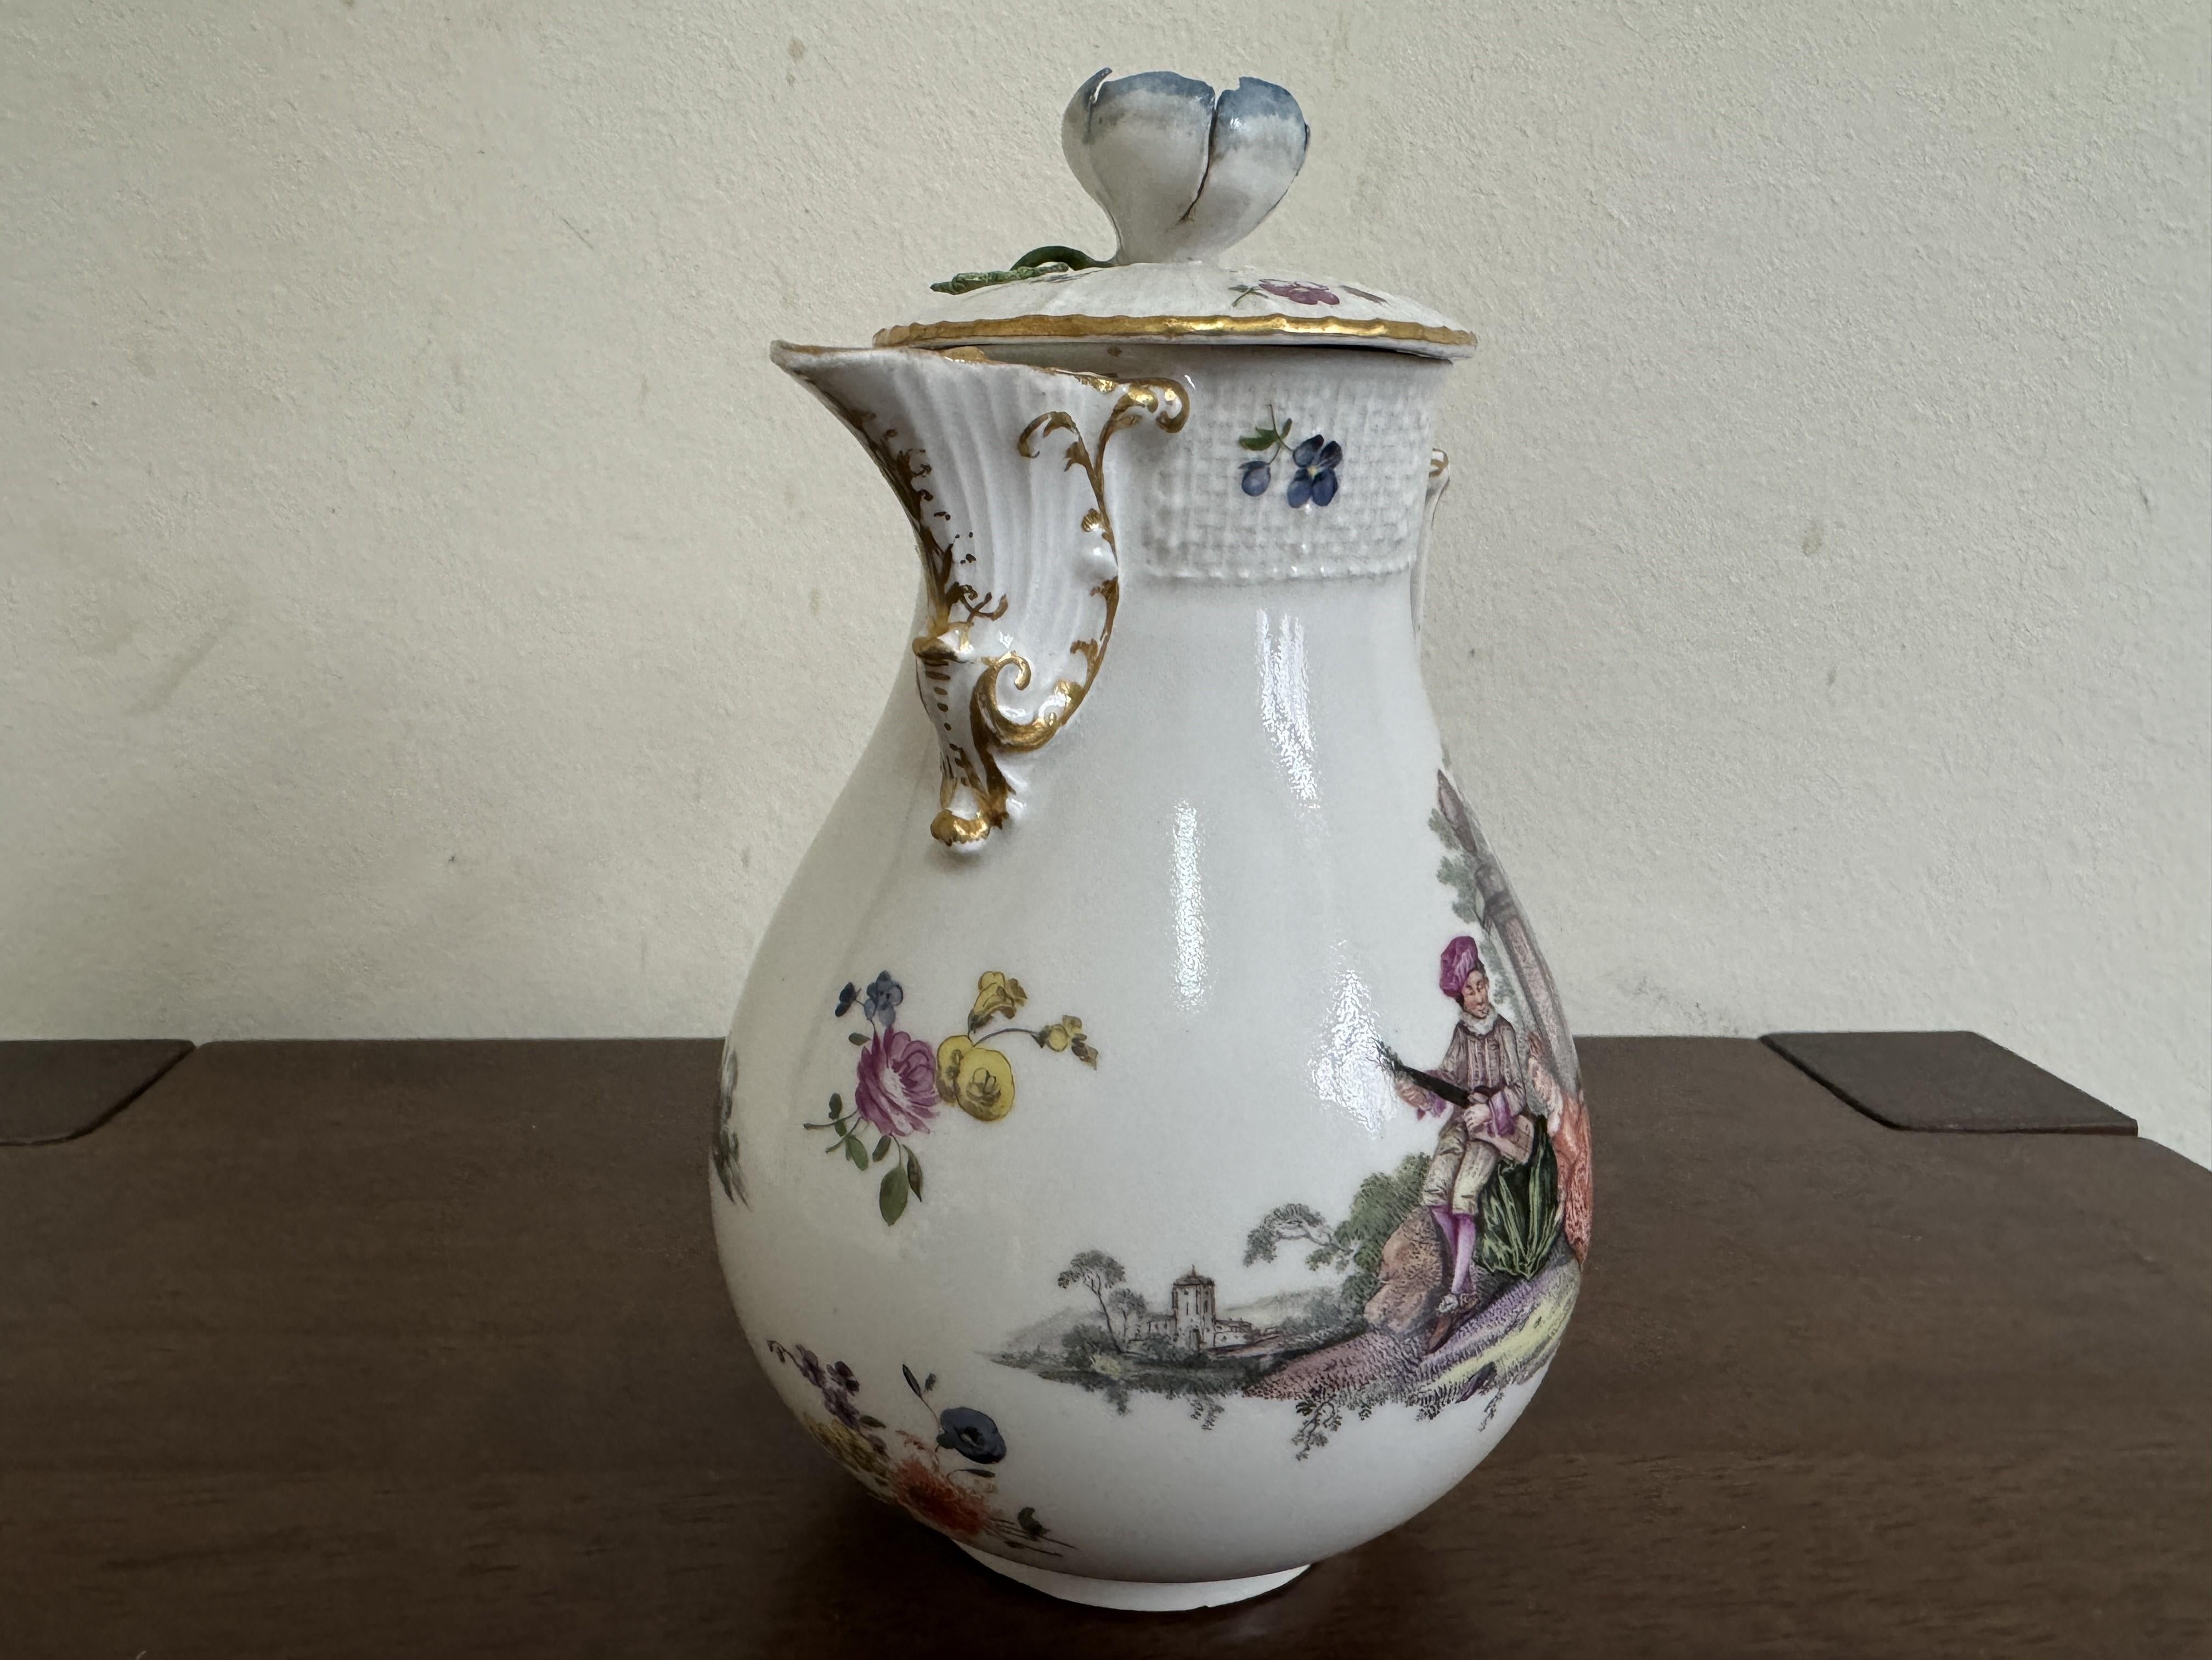 Pot à lait et couvercle de Meissen, de forme balustre avec poignée en forme de bréchet et bec verseur en forme de coquille, peint de deux scènes de parc sous le col et le couvercle en osier, sommet floral, vers 1760, hauteur 16 cm, marque aux épées